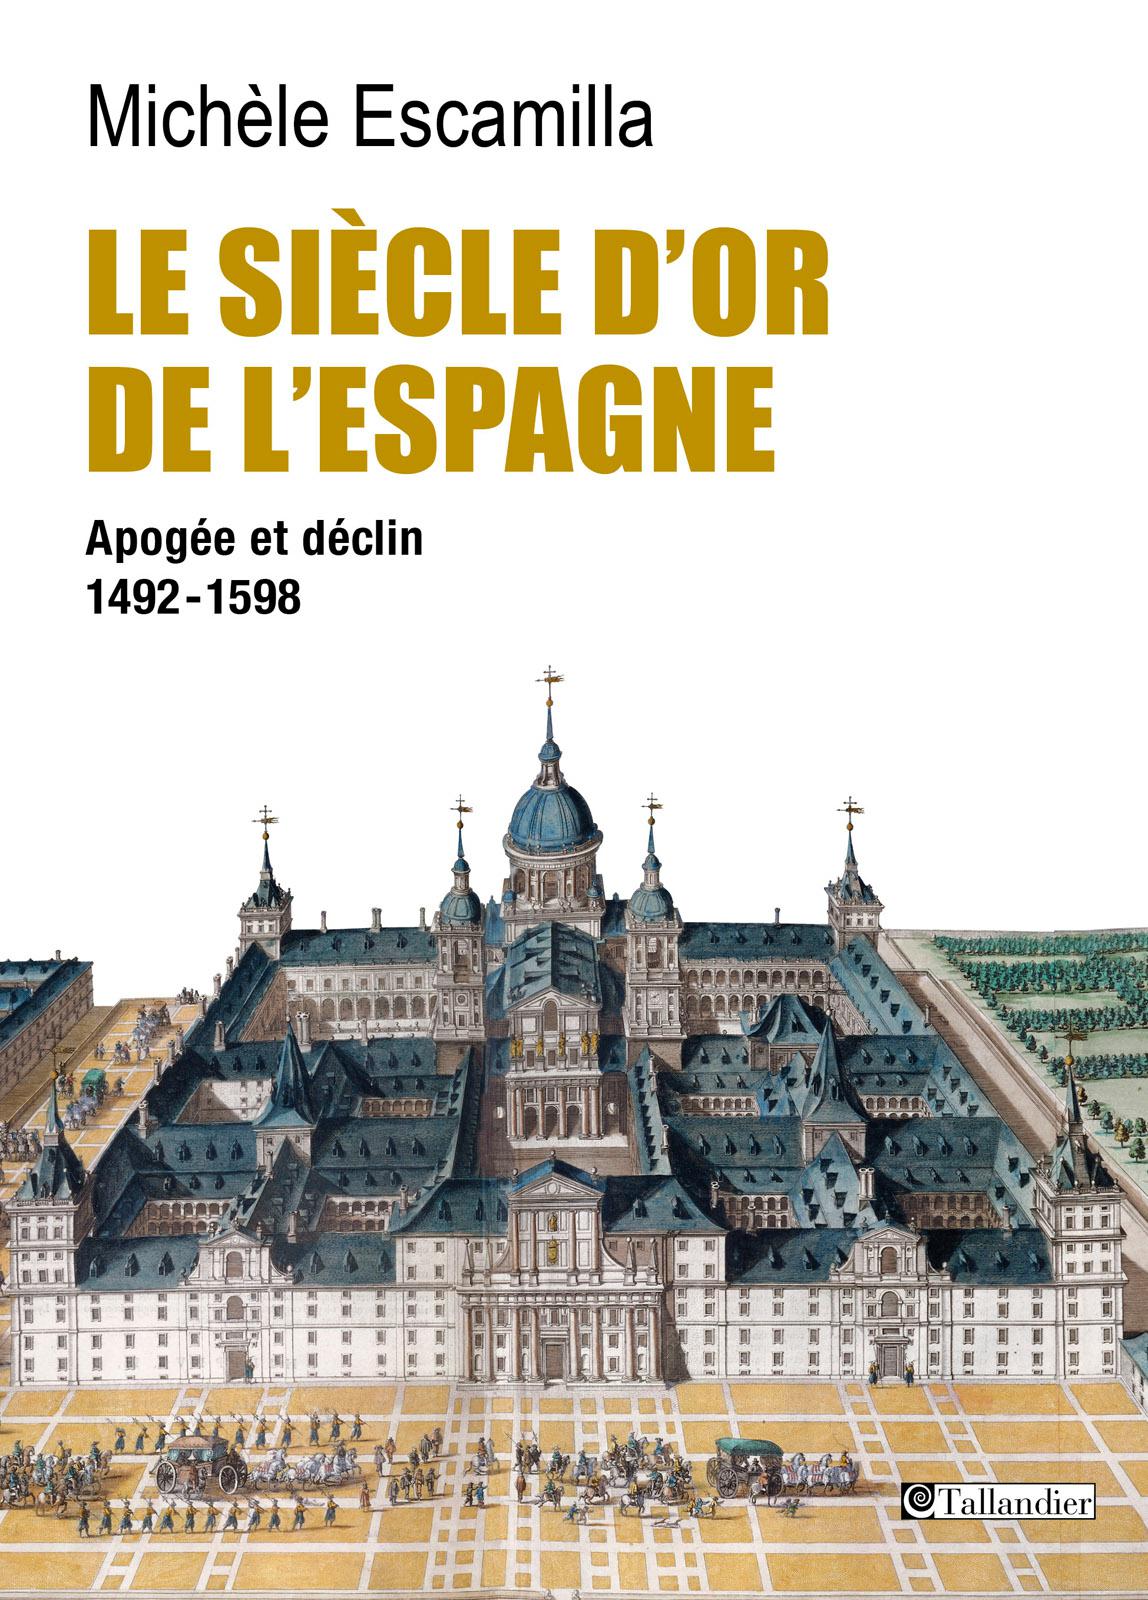 Le siècle d'or de l'Espagne : Apogée et déclin 1492-1598. Michèle Escamilla